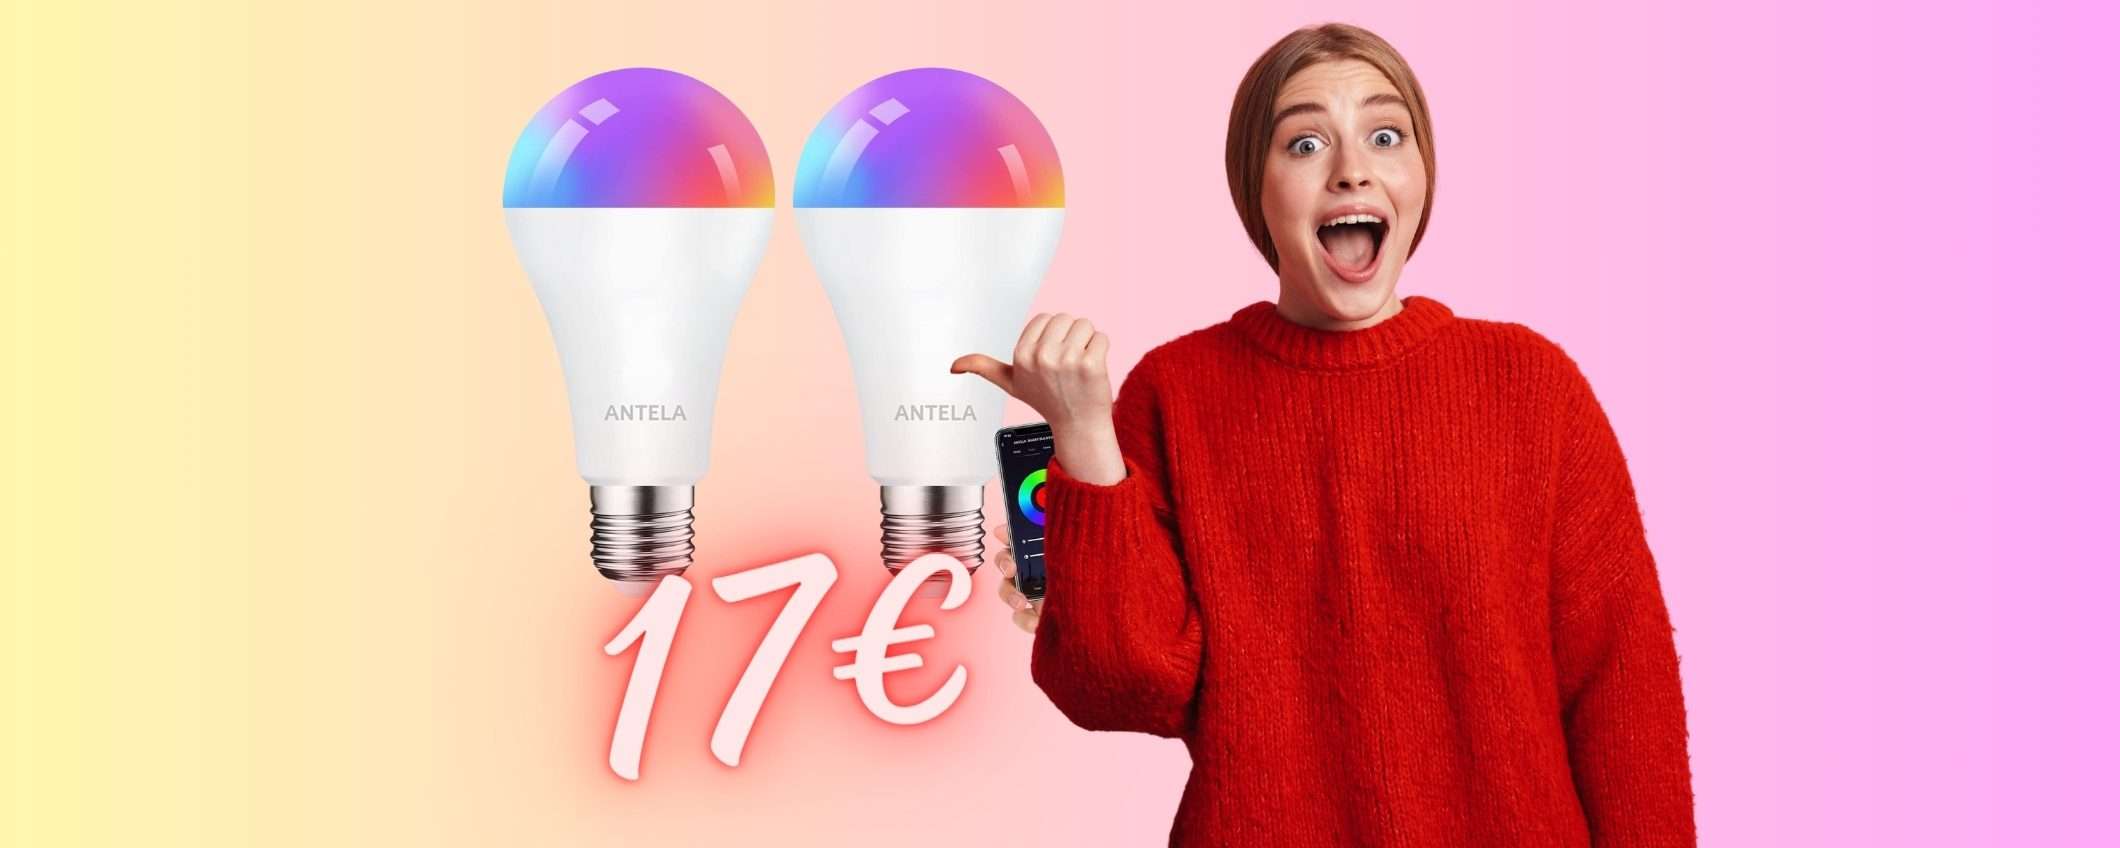 Due lampadine smart colorate con controllo remoto a SOLI 17€